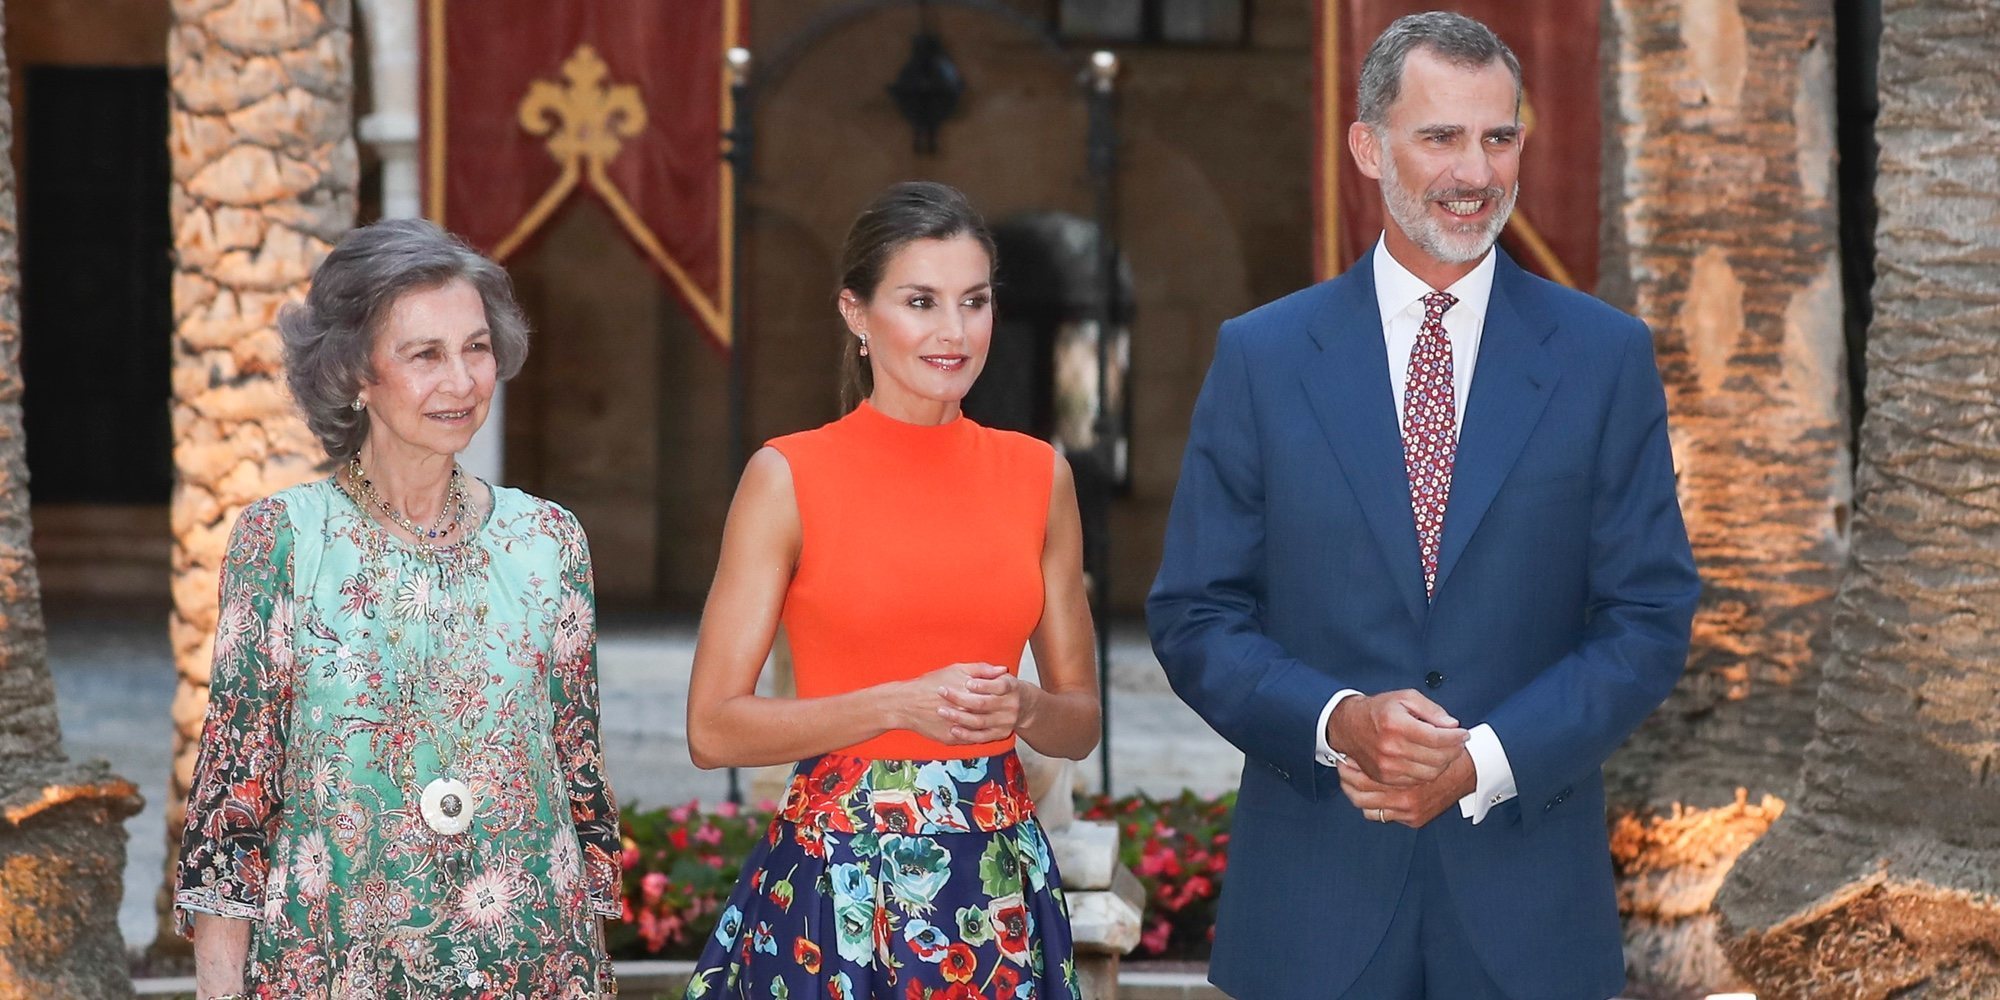 Los Reyes Felipe y Letizia reciben a la sociedad balear en el Palacio de la Almudaina junto a la Reina Sofía